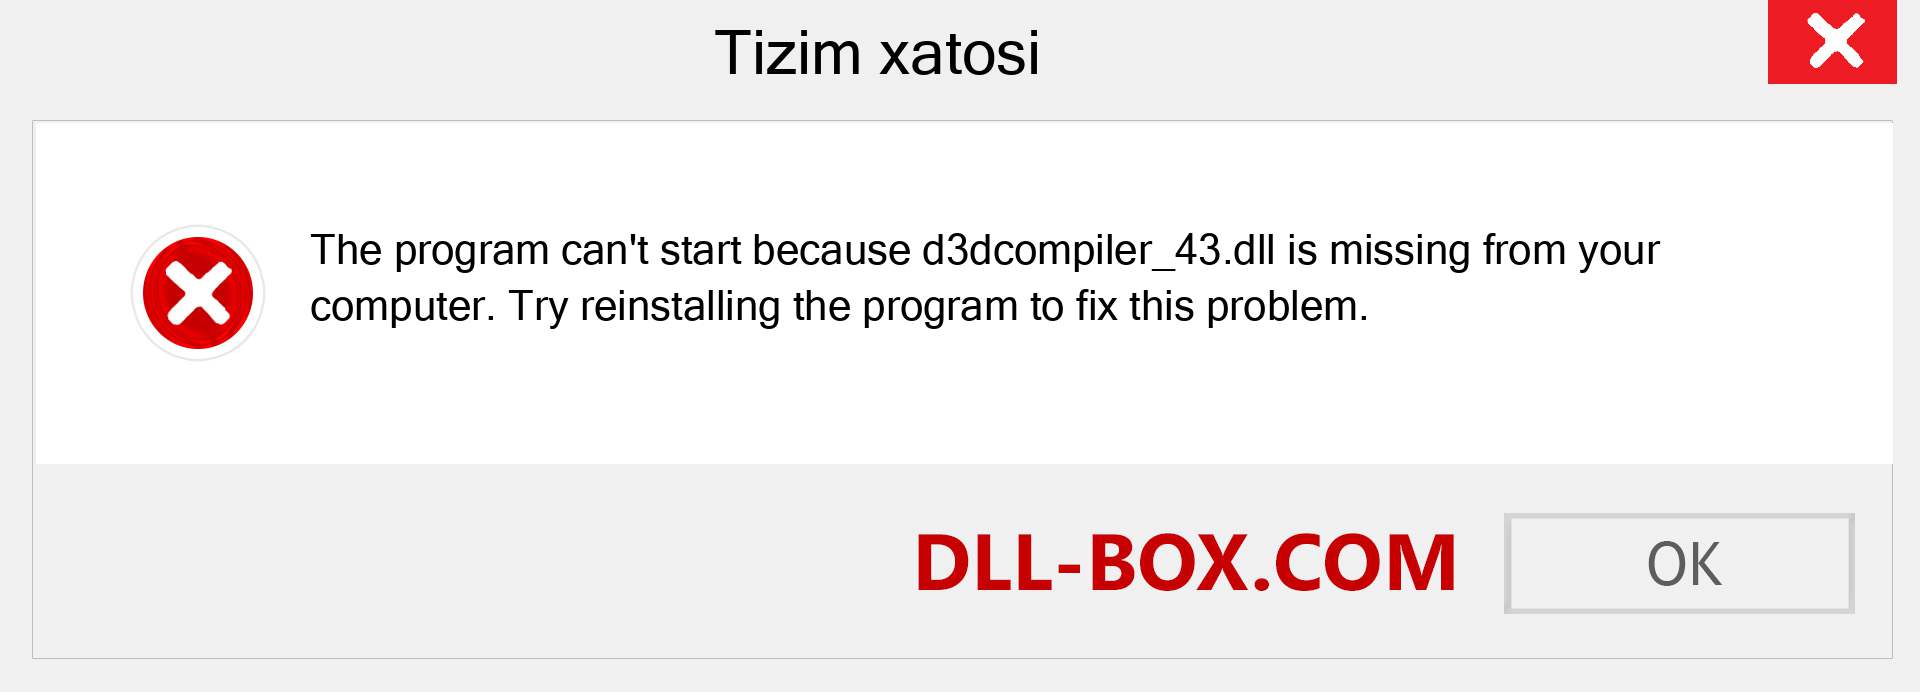 d3dcompiler_43.dll fayli yo'qolganmi?. Windows 7, 8, 10 uchun yuklab olish - Windowsda d3dcompiler_43 dll etishmayotgan xatoni tuzating, rasmlar, rasmlar